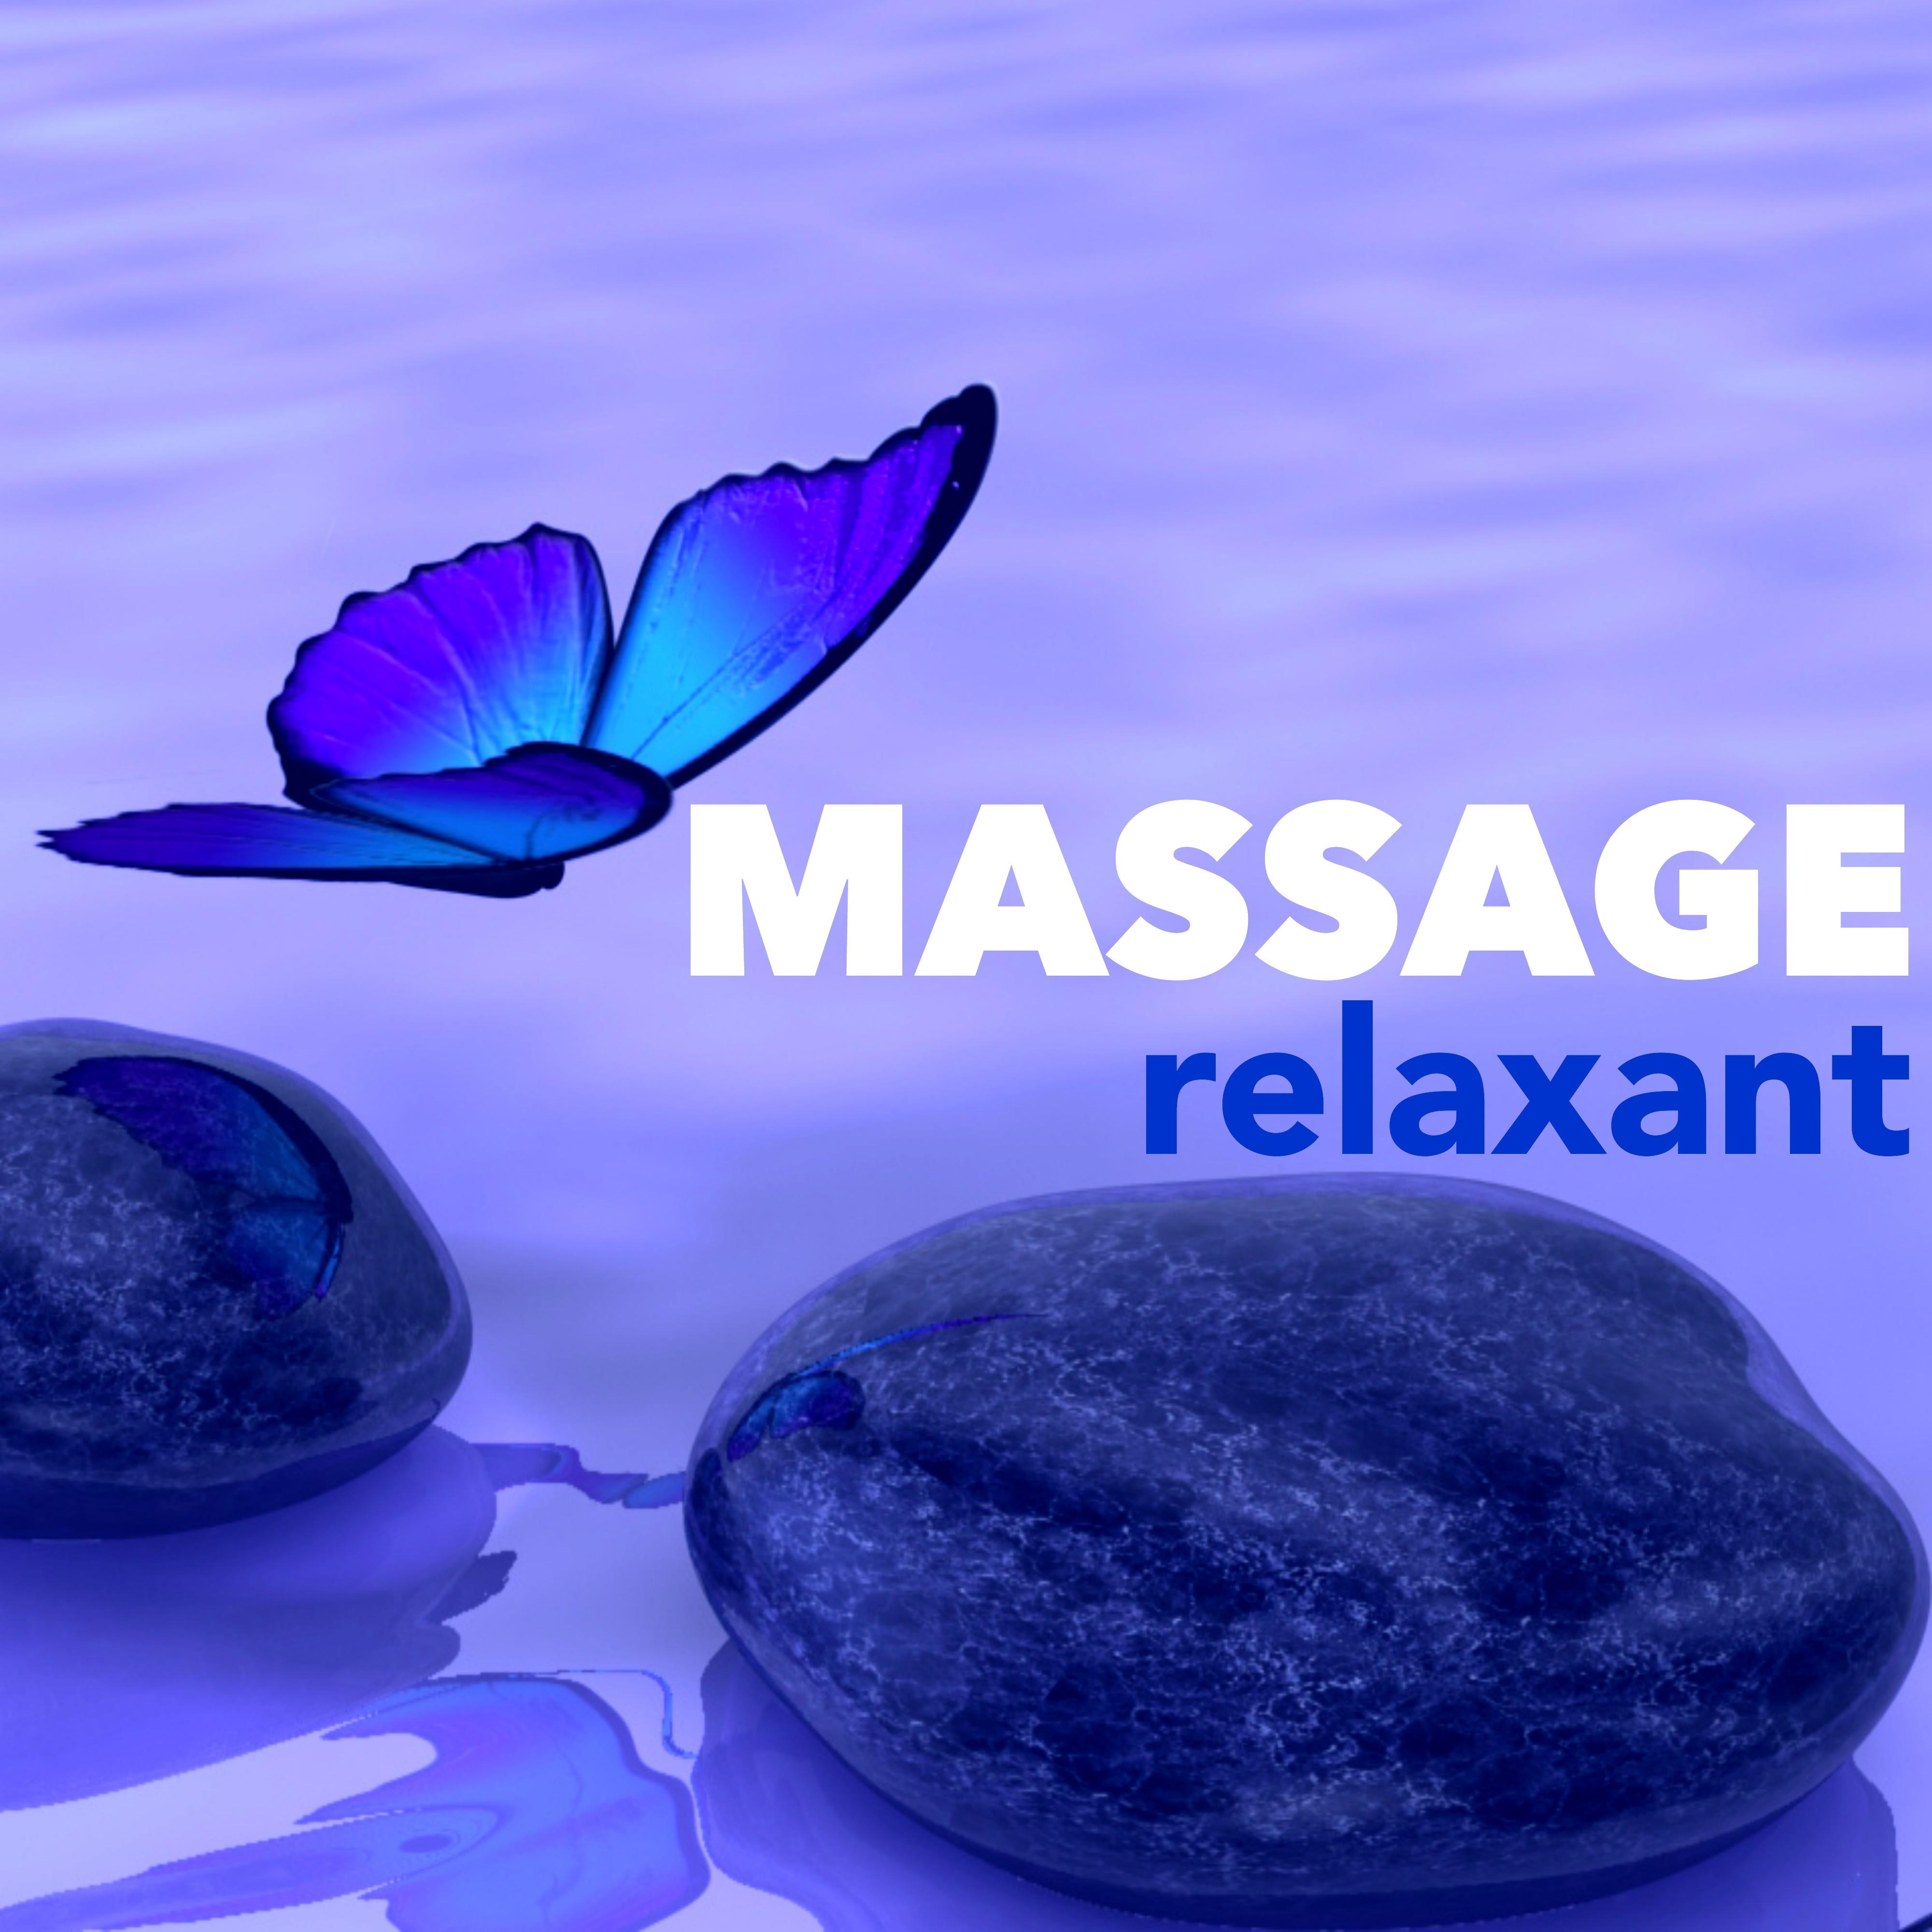 Massage Relaxant  Coffret Bien tre Collection pour Spa Relaxation Me ditation